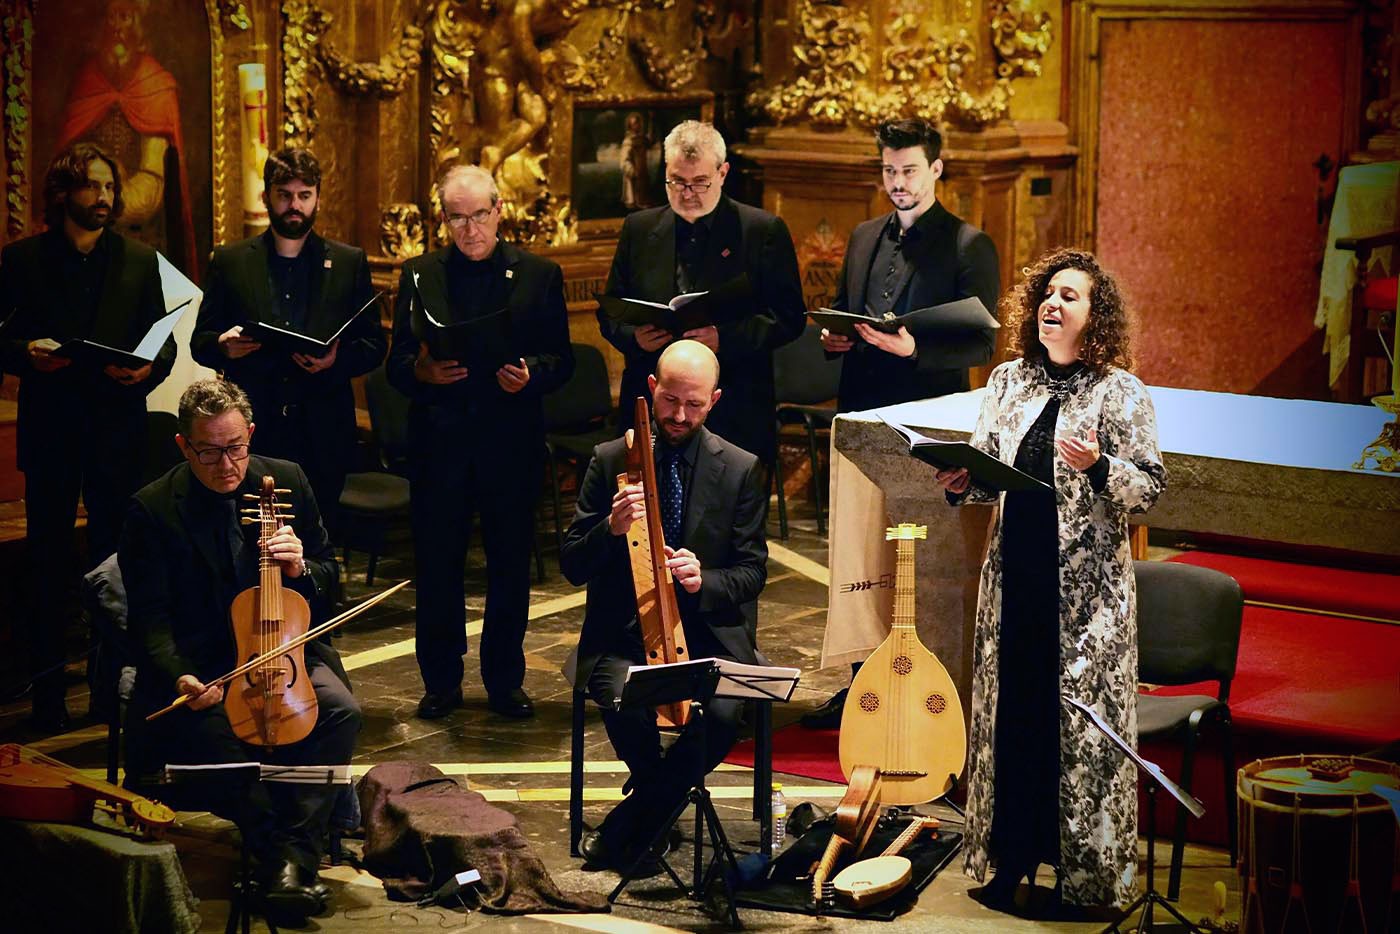 Capella de Ministrers debuta en Les Arts con ‘Madre de Devs’, un programa en torno a la música en tiempos de Alfonso X El Sabio